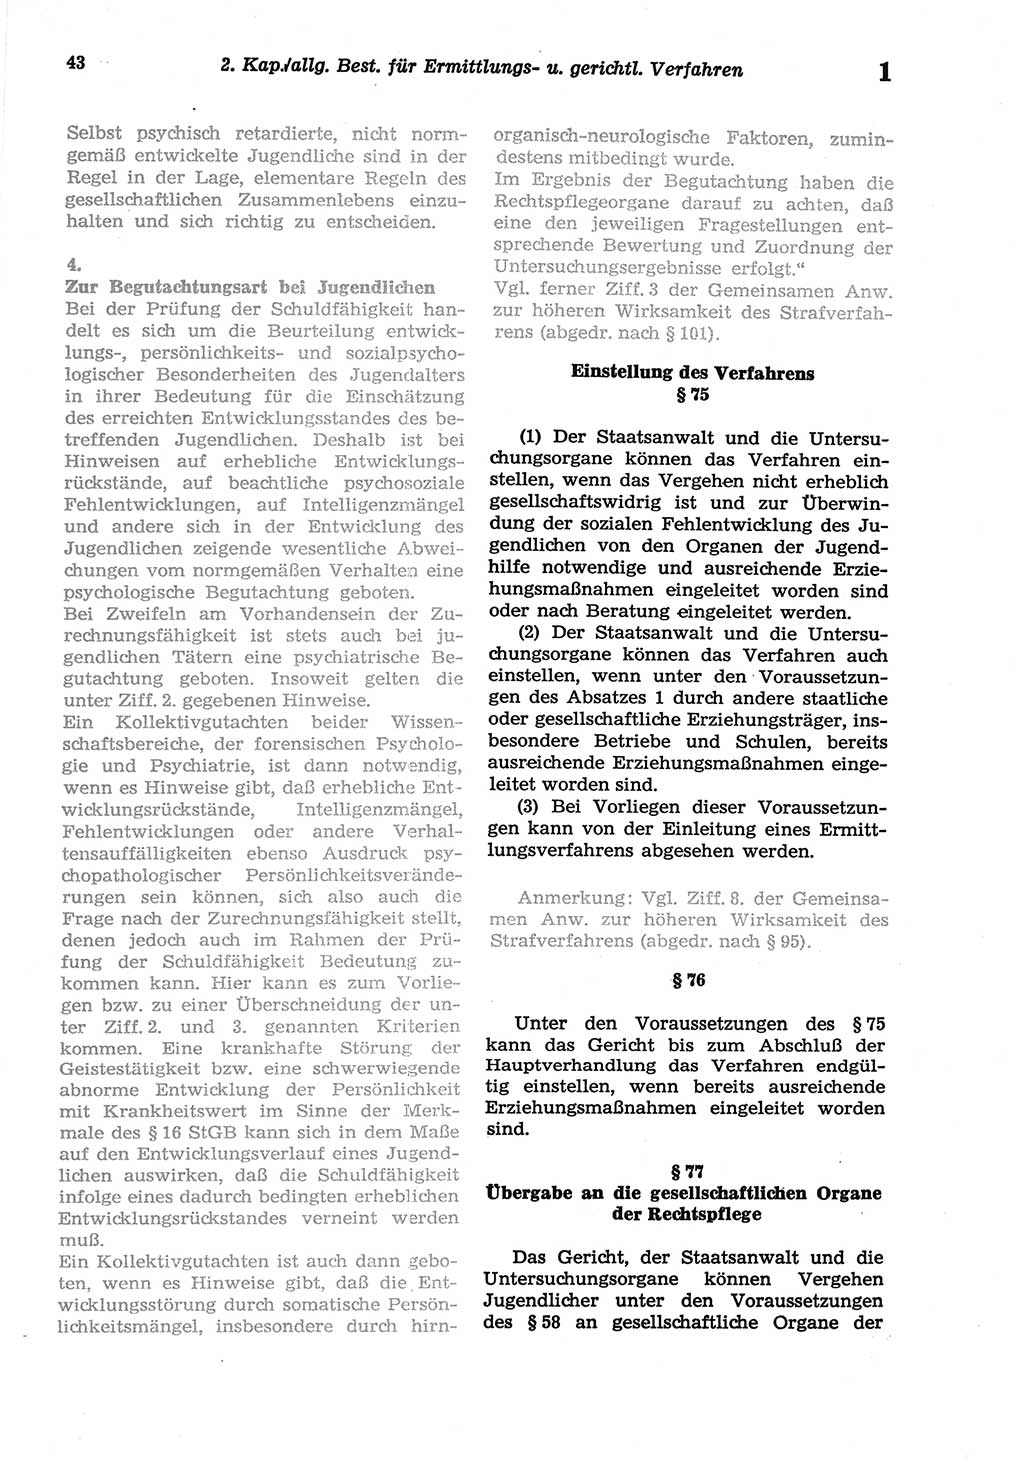 Strafprozeßordnung (StPO) der Deutschen Demokratischen Republik (DDR) sowie angrenzende Gesetze und Bestimmungen 1977, Seite 43 (StPO DDR Ges. Best. 1977, S. 43)